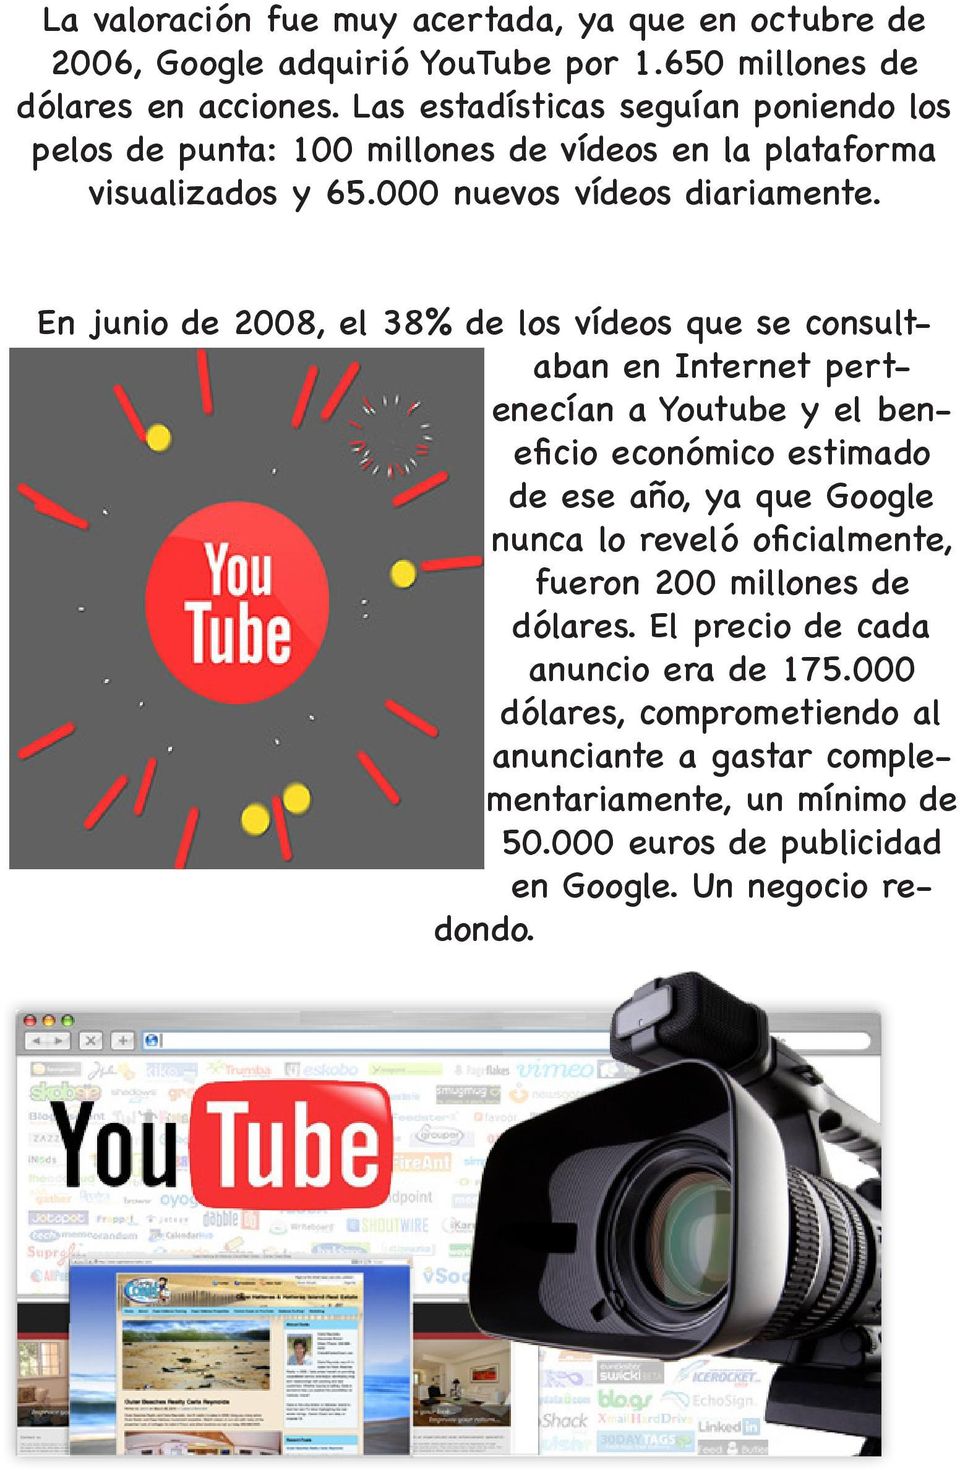 En junio de 2008, el 38% de los vídeos que se consultaban en Internet pertenecían a Youtube y el beneficio económico estimado de ese año, ya que Google nunca lo